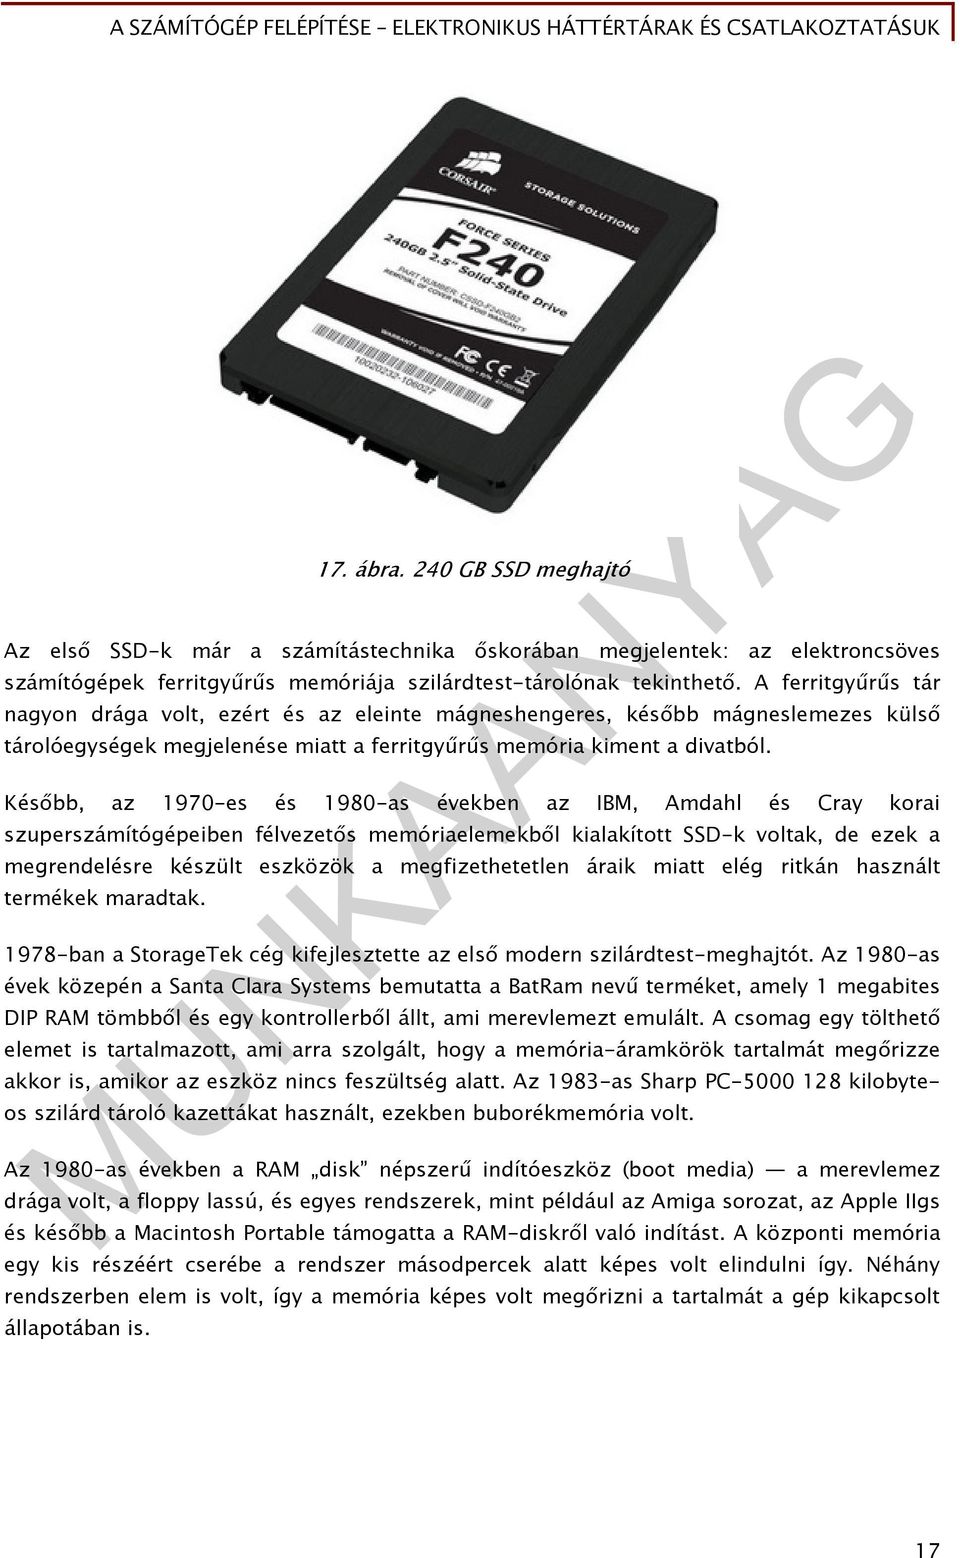 Később, az 1970-es és 1980-as években az IBM, Amdahl és Cray korai szuperszámítógépeiben félvezetős memóriaelemekből kialakított SSD-k voltak, de ezek a megrendelésre készült eszközök a